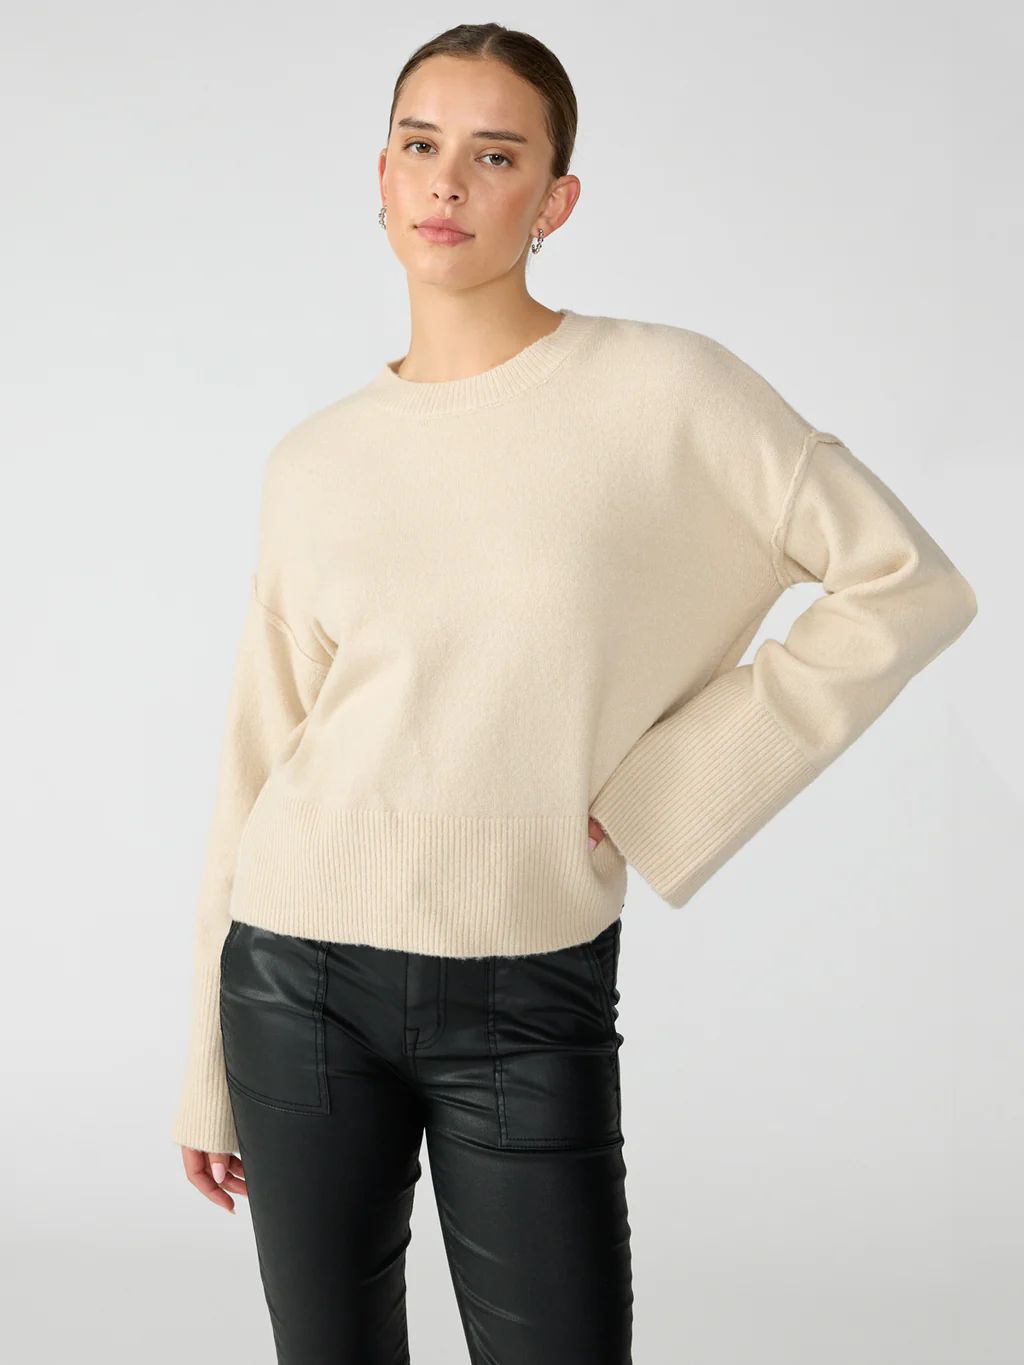 Sunday's Sweater Toasted Marshmallow | Sanctuary Clothing